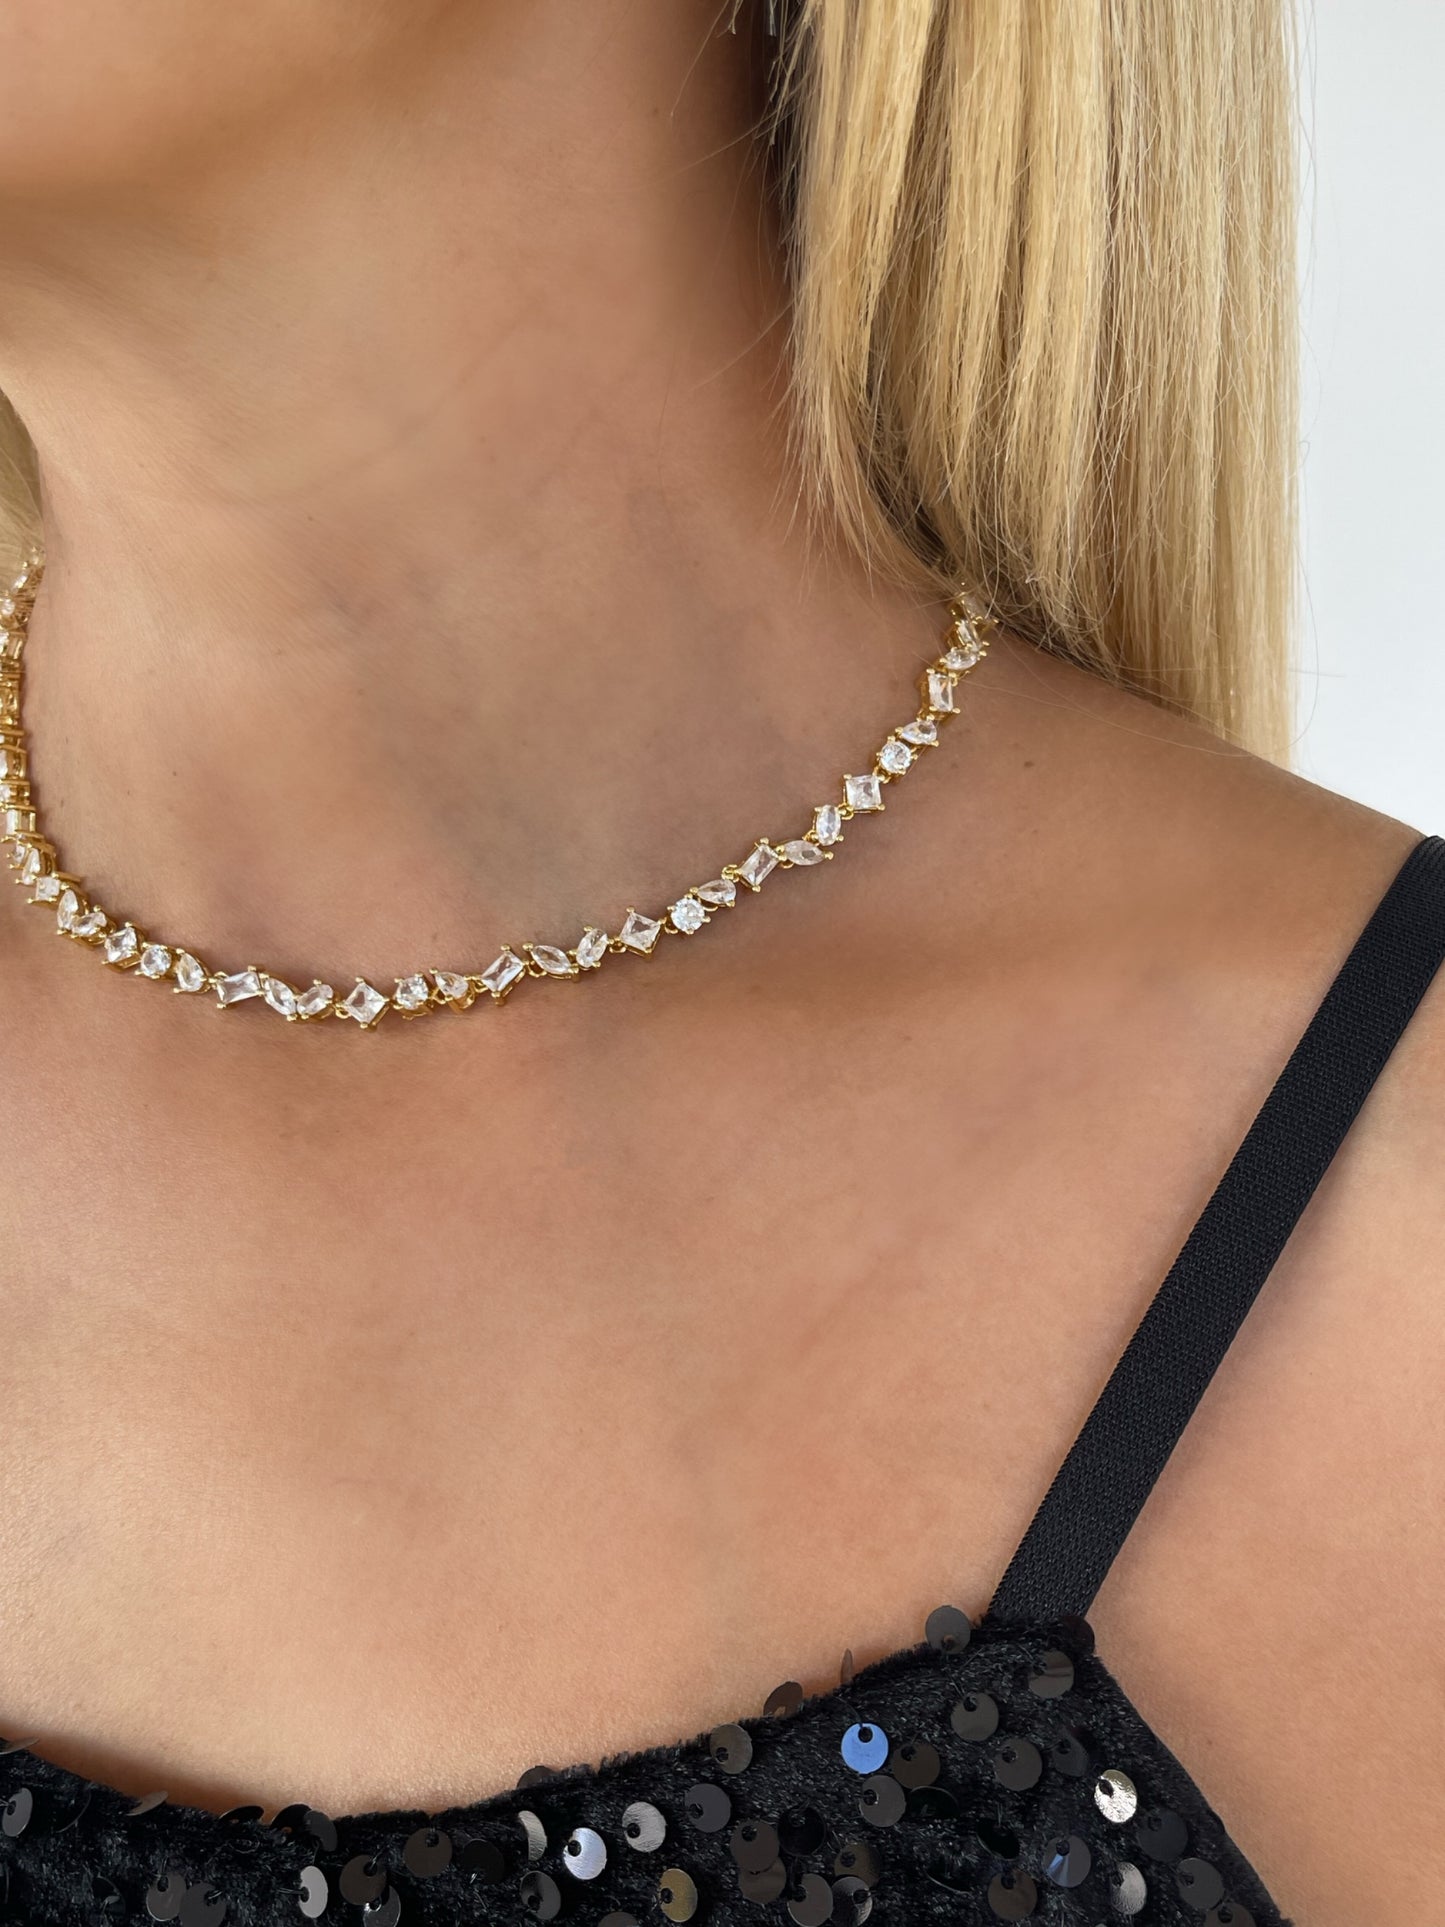 Clara tennis necklace